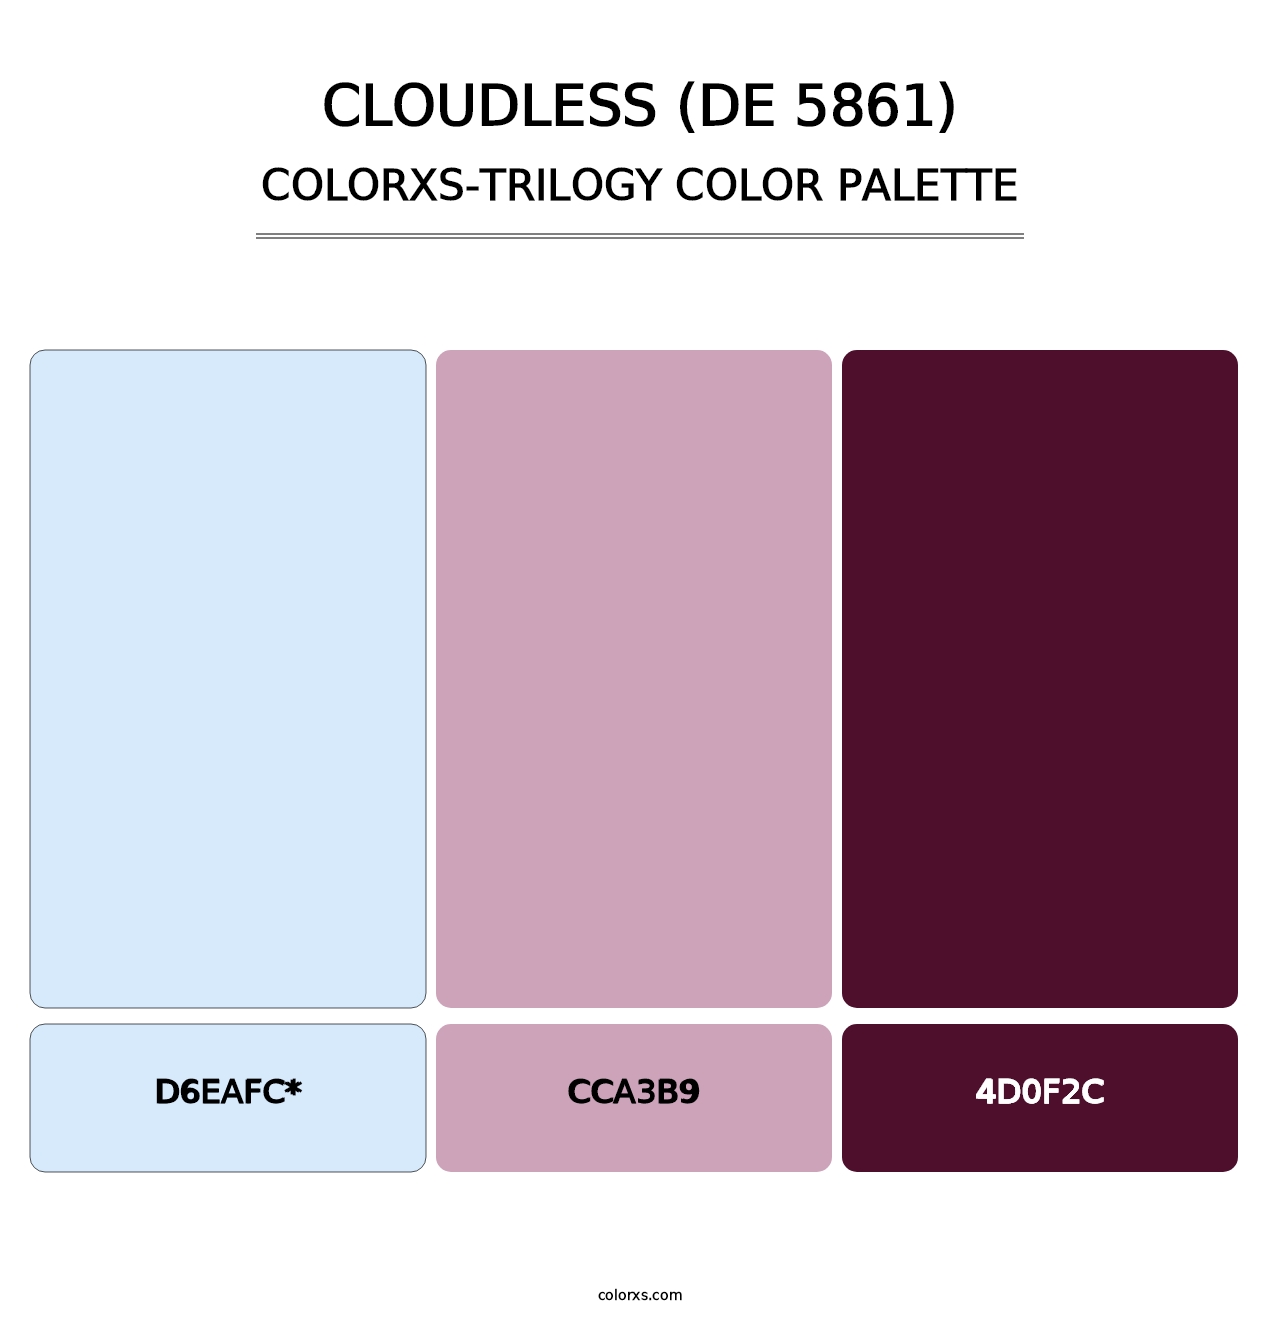 Cloudless (DE 5861) - Colorxs Trilogy Palette